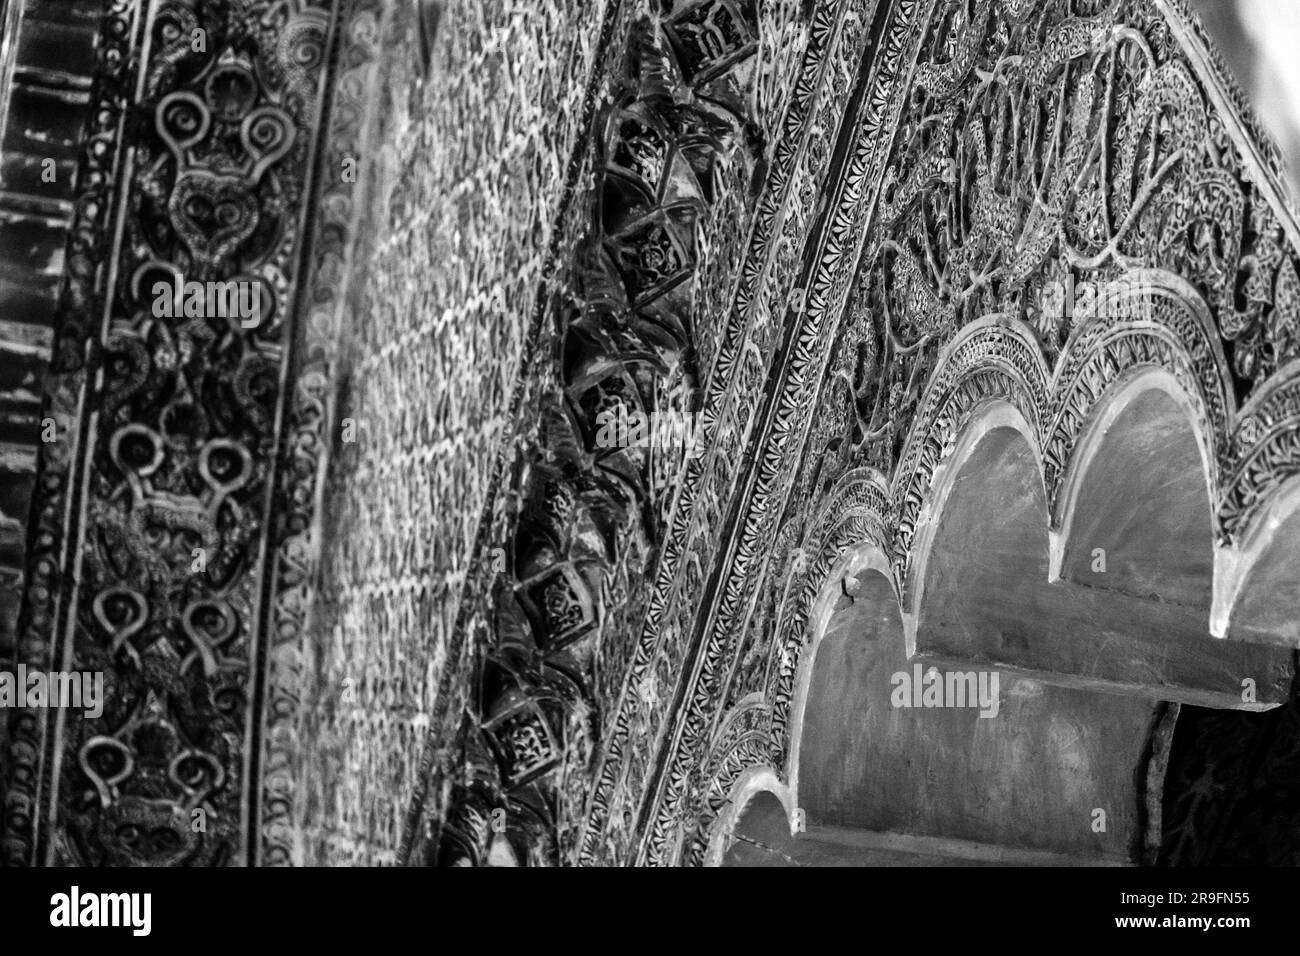 Innenansicht und dekorative Details der herrlichen Moschee von Cordoba. Heute ist die Mezquita-Kathedrale, Andalusien, Spanien. Stockfoto